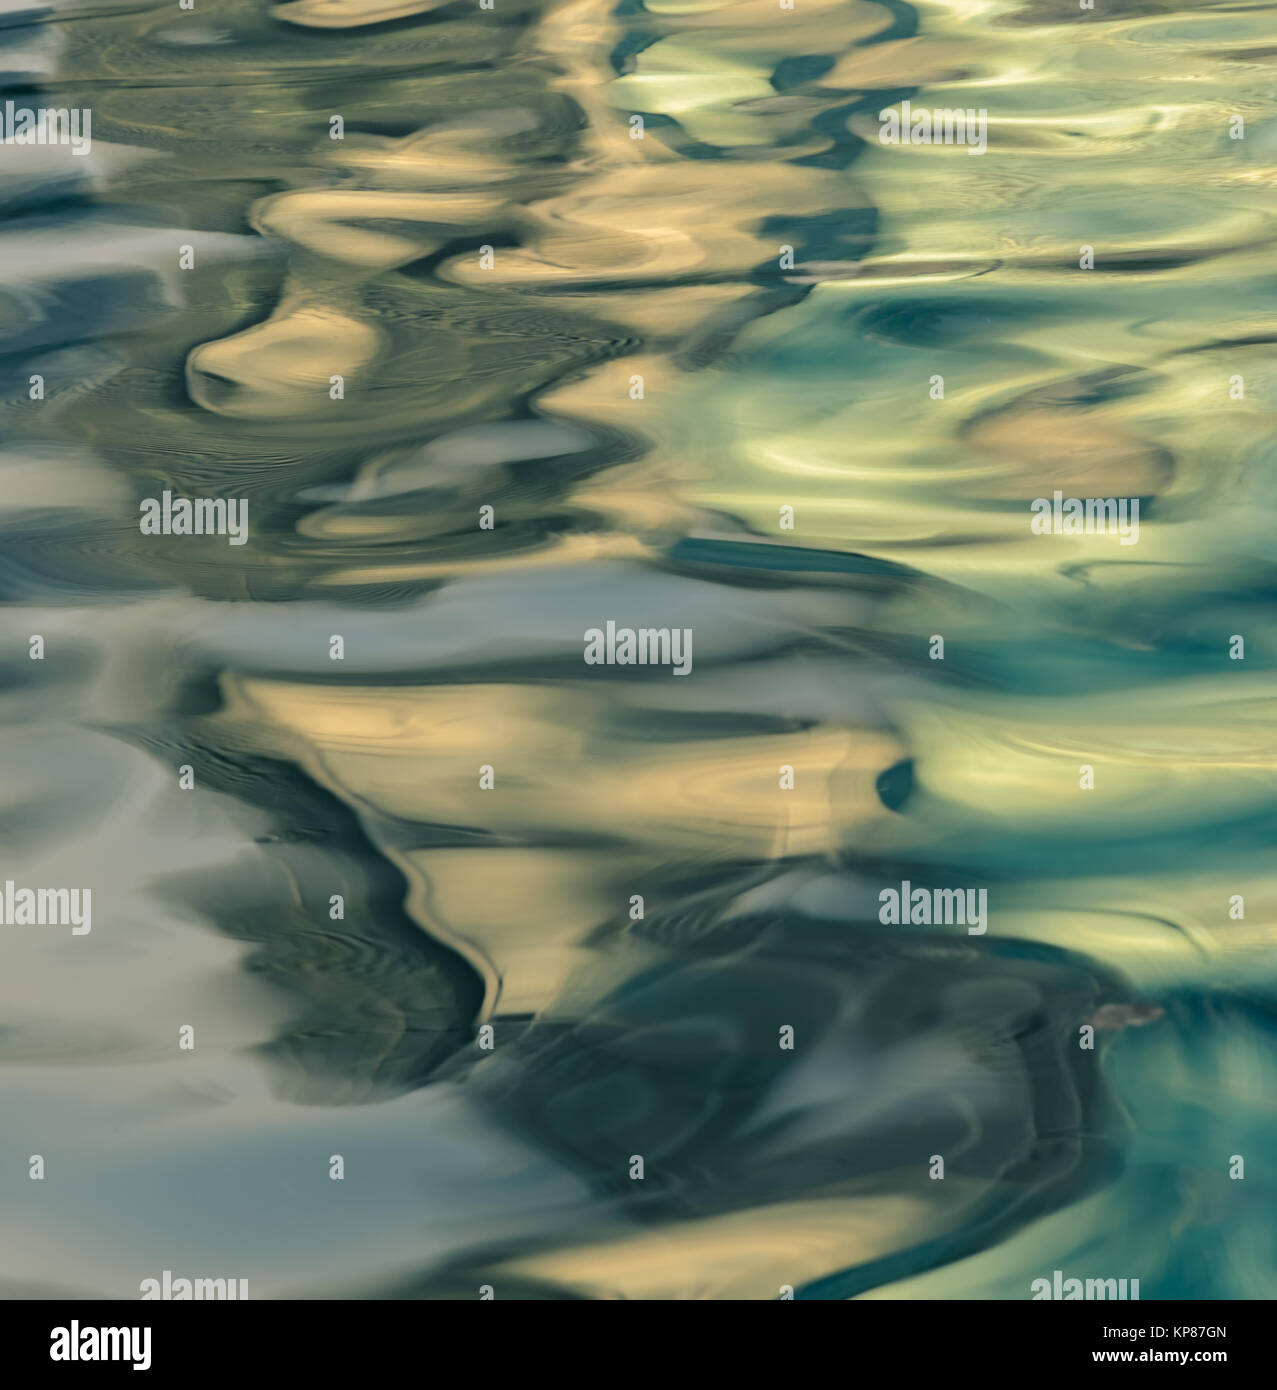 Zusammenfassung Hintergrund des unscharfen Wasseroberfläche Stockfoto